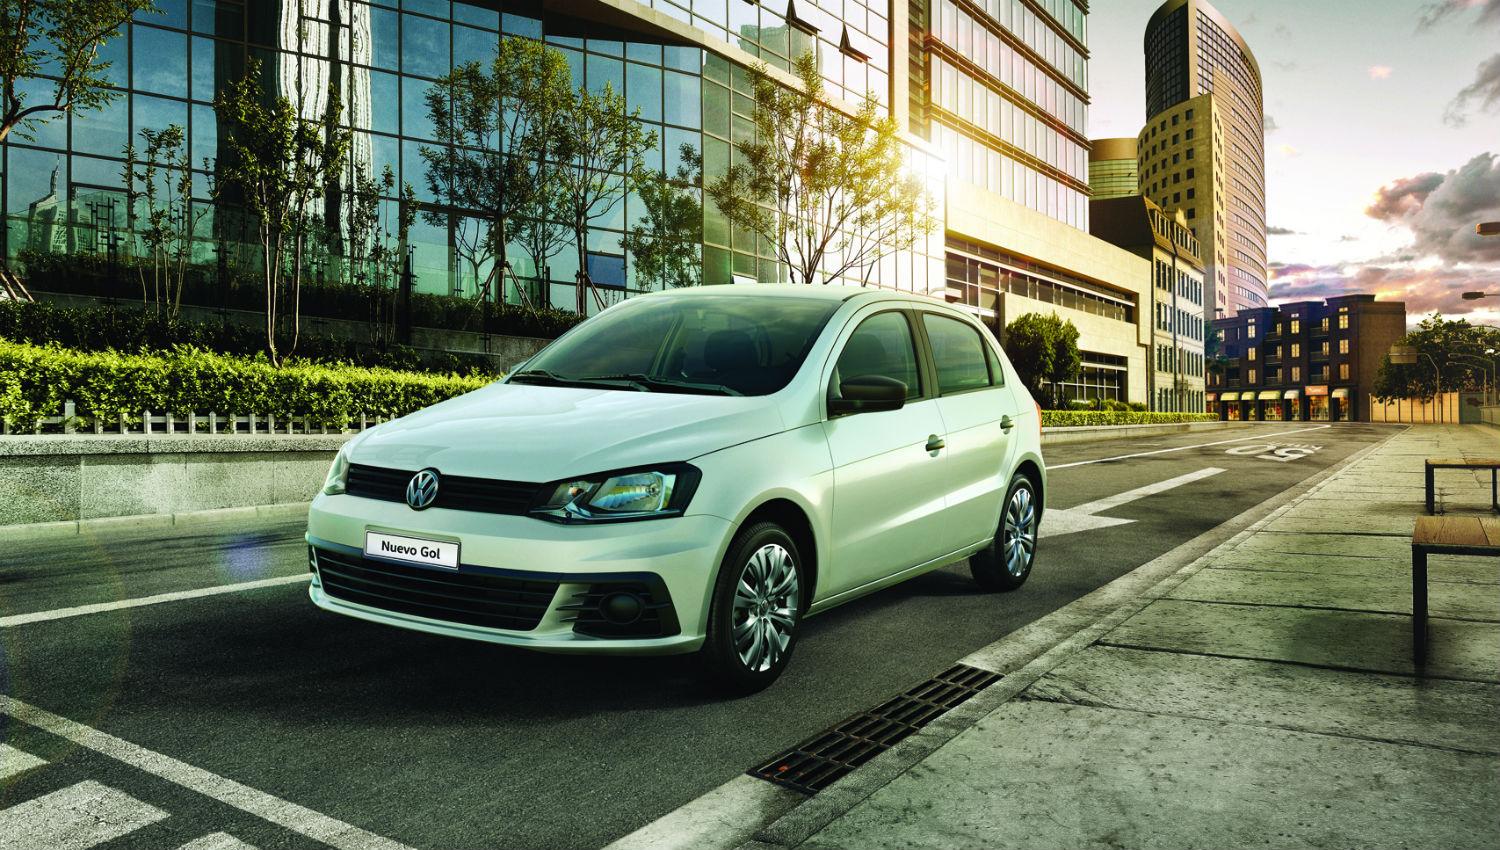 Cómo es el Gol Trend de Volkswagen, el auto más vendido en el país